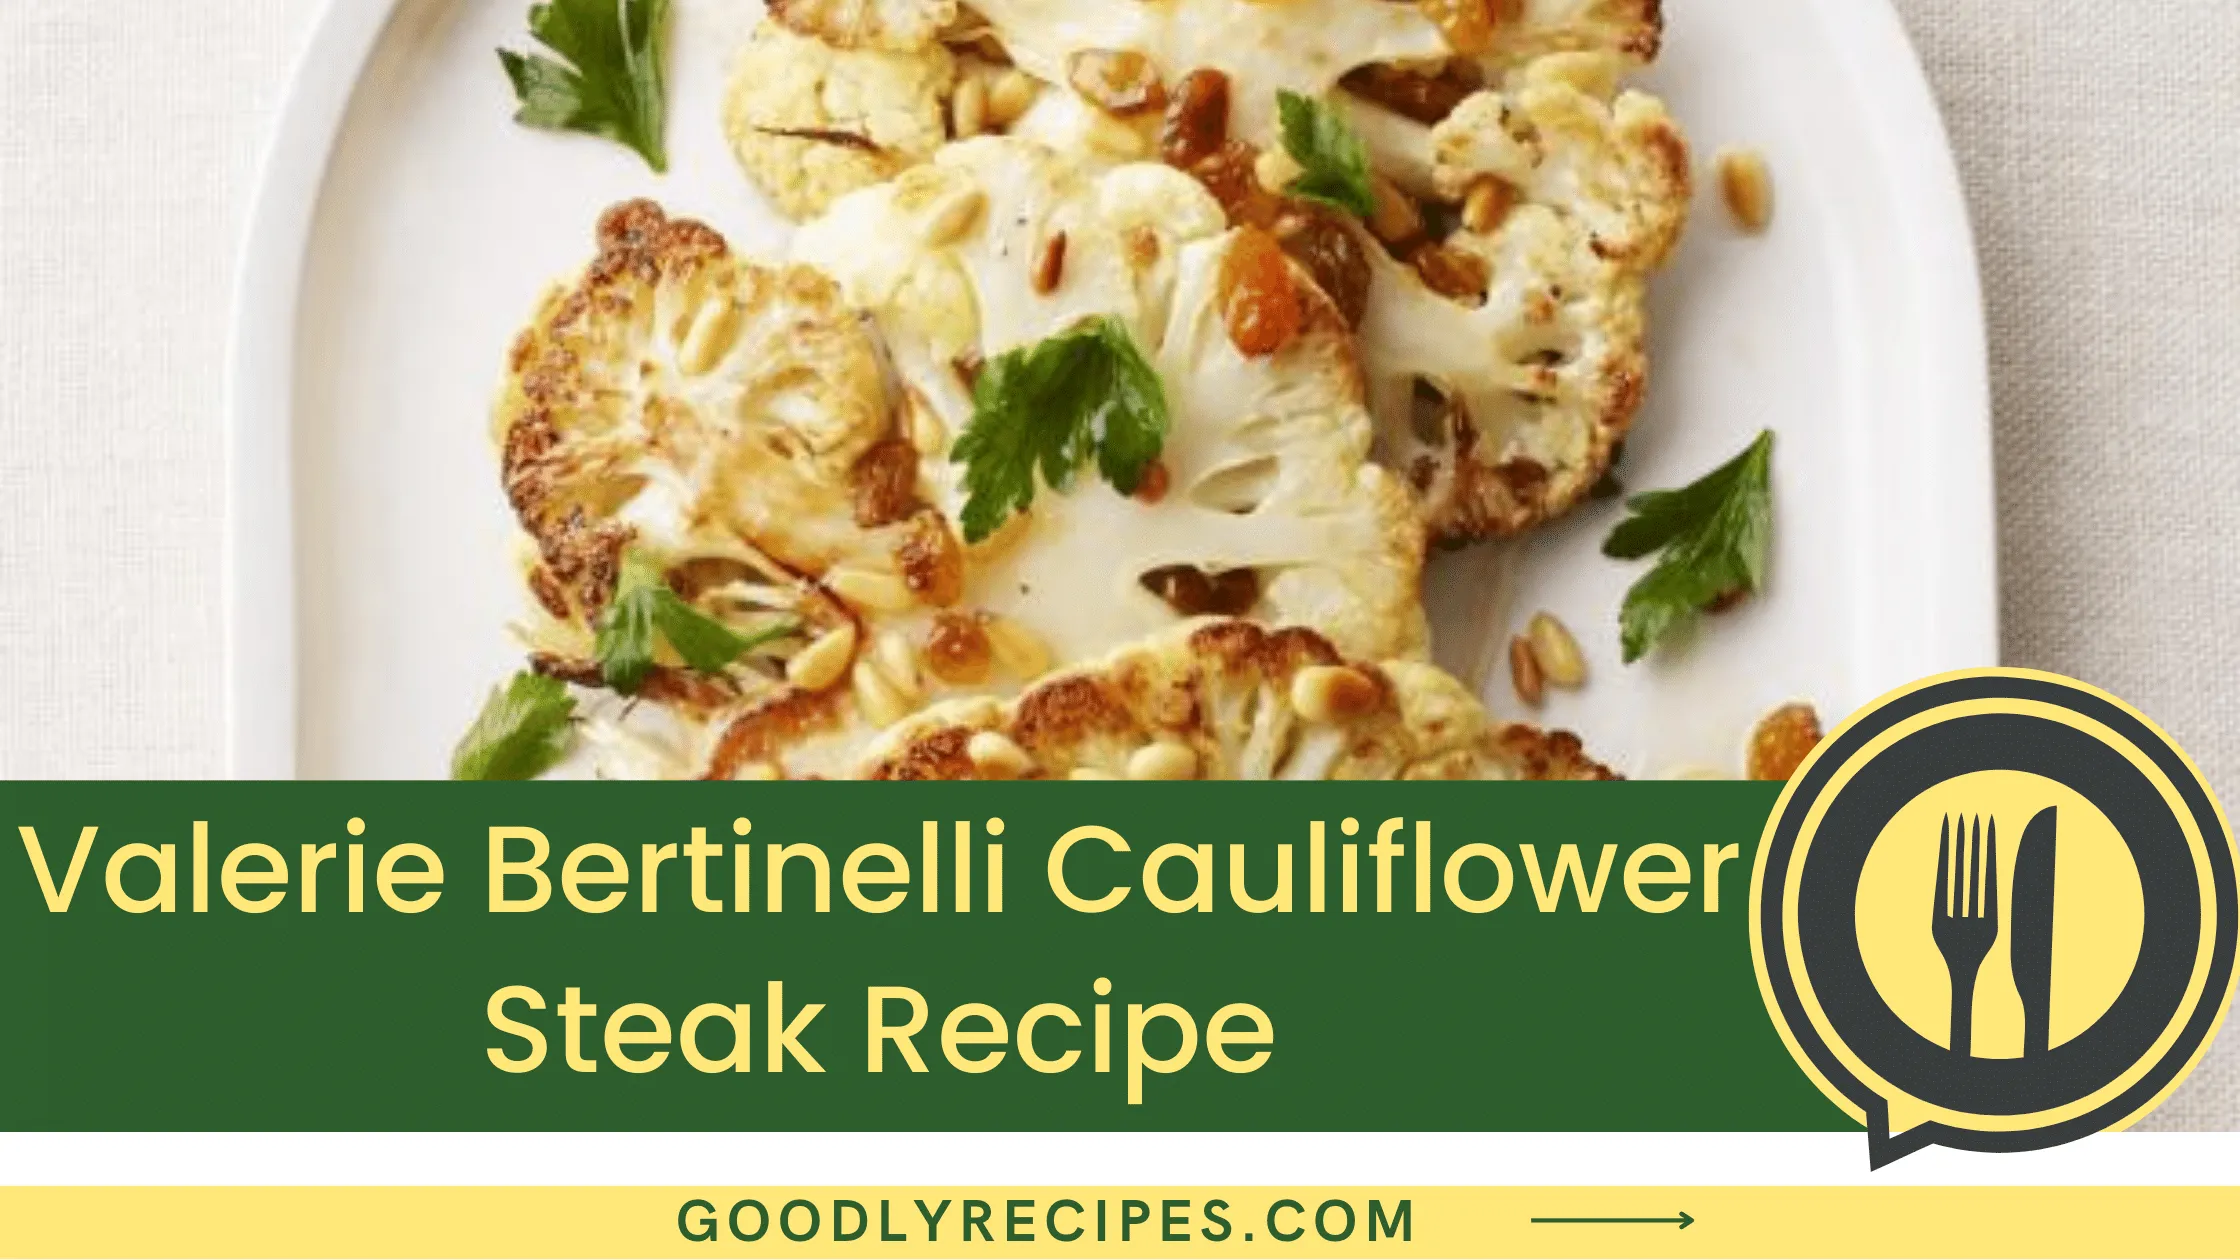 What Is Valerie Bertinelli Cauliflower Steak?